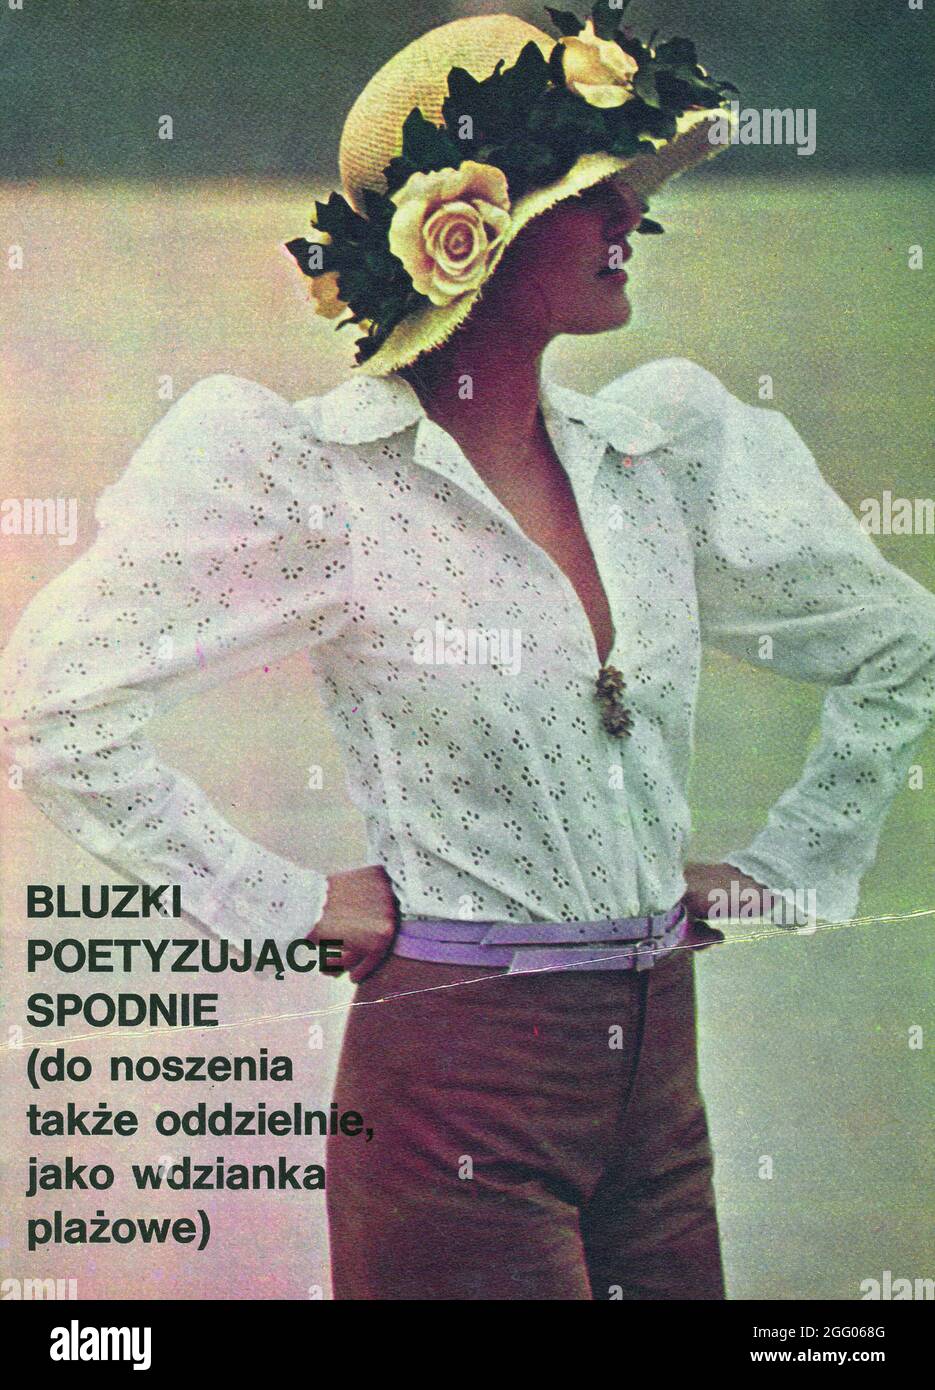 Vintage fashion photography retro photo collage clipping 1960s 1970s  zdjęcie modowe vintage wycinek z gazety centerfold Stock Photo - Alamy